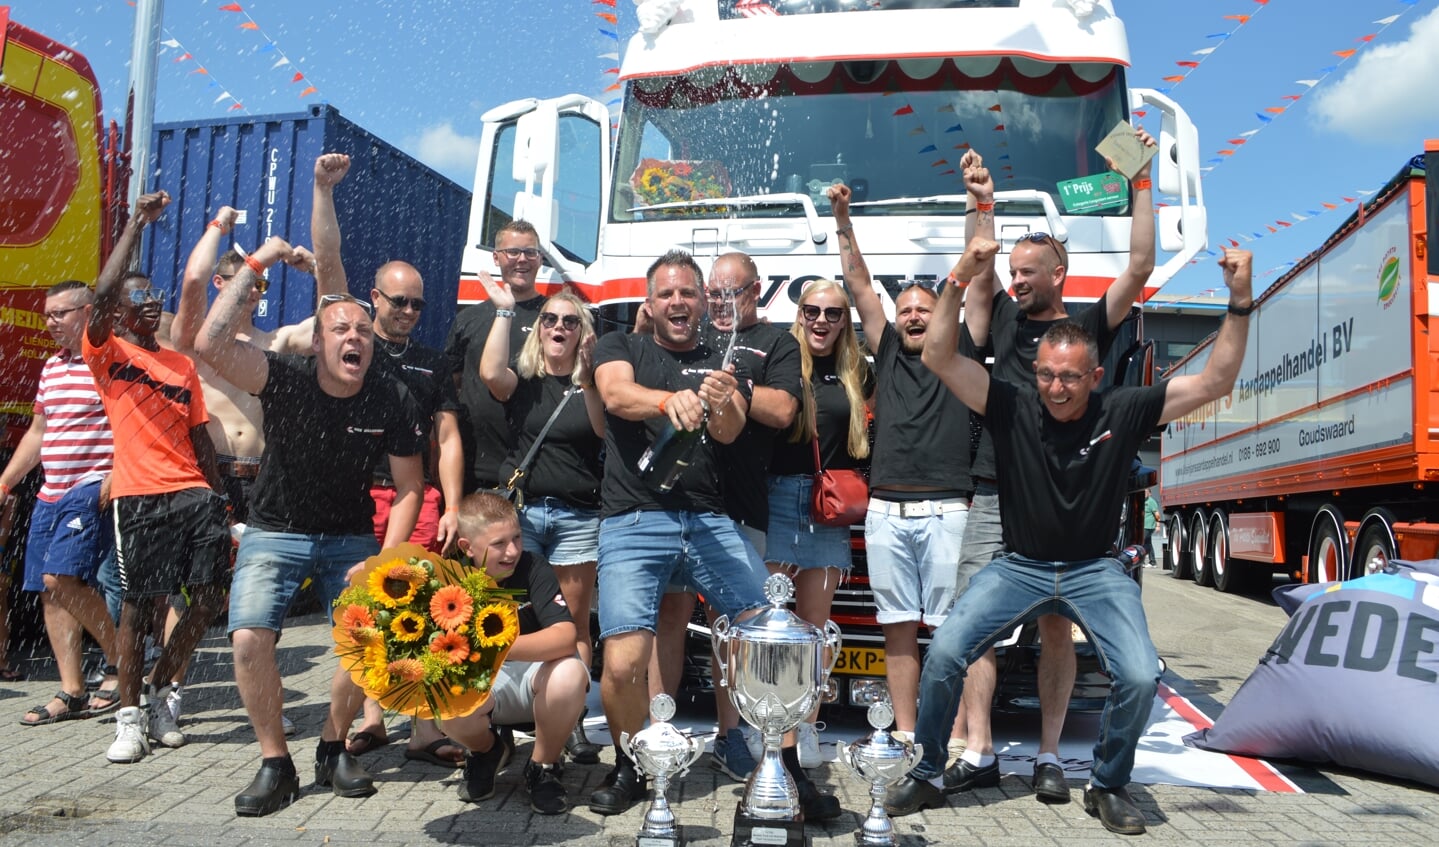 Het team van Nick Willigenburg viert de overwinning. Het won drie bekers: in de categorie 'losgestort', voor de mooiste opbouw en als Mooiste truck van Nederland.